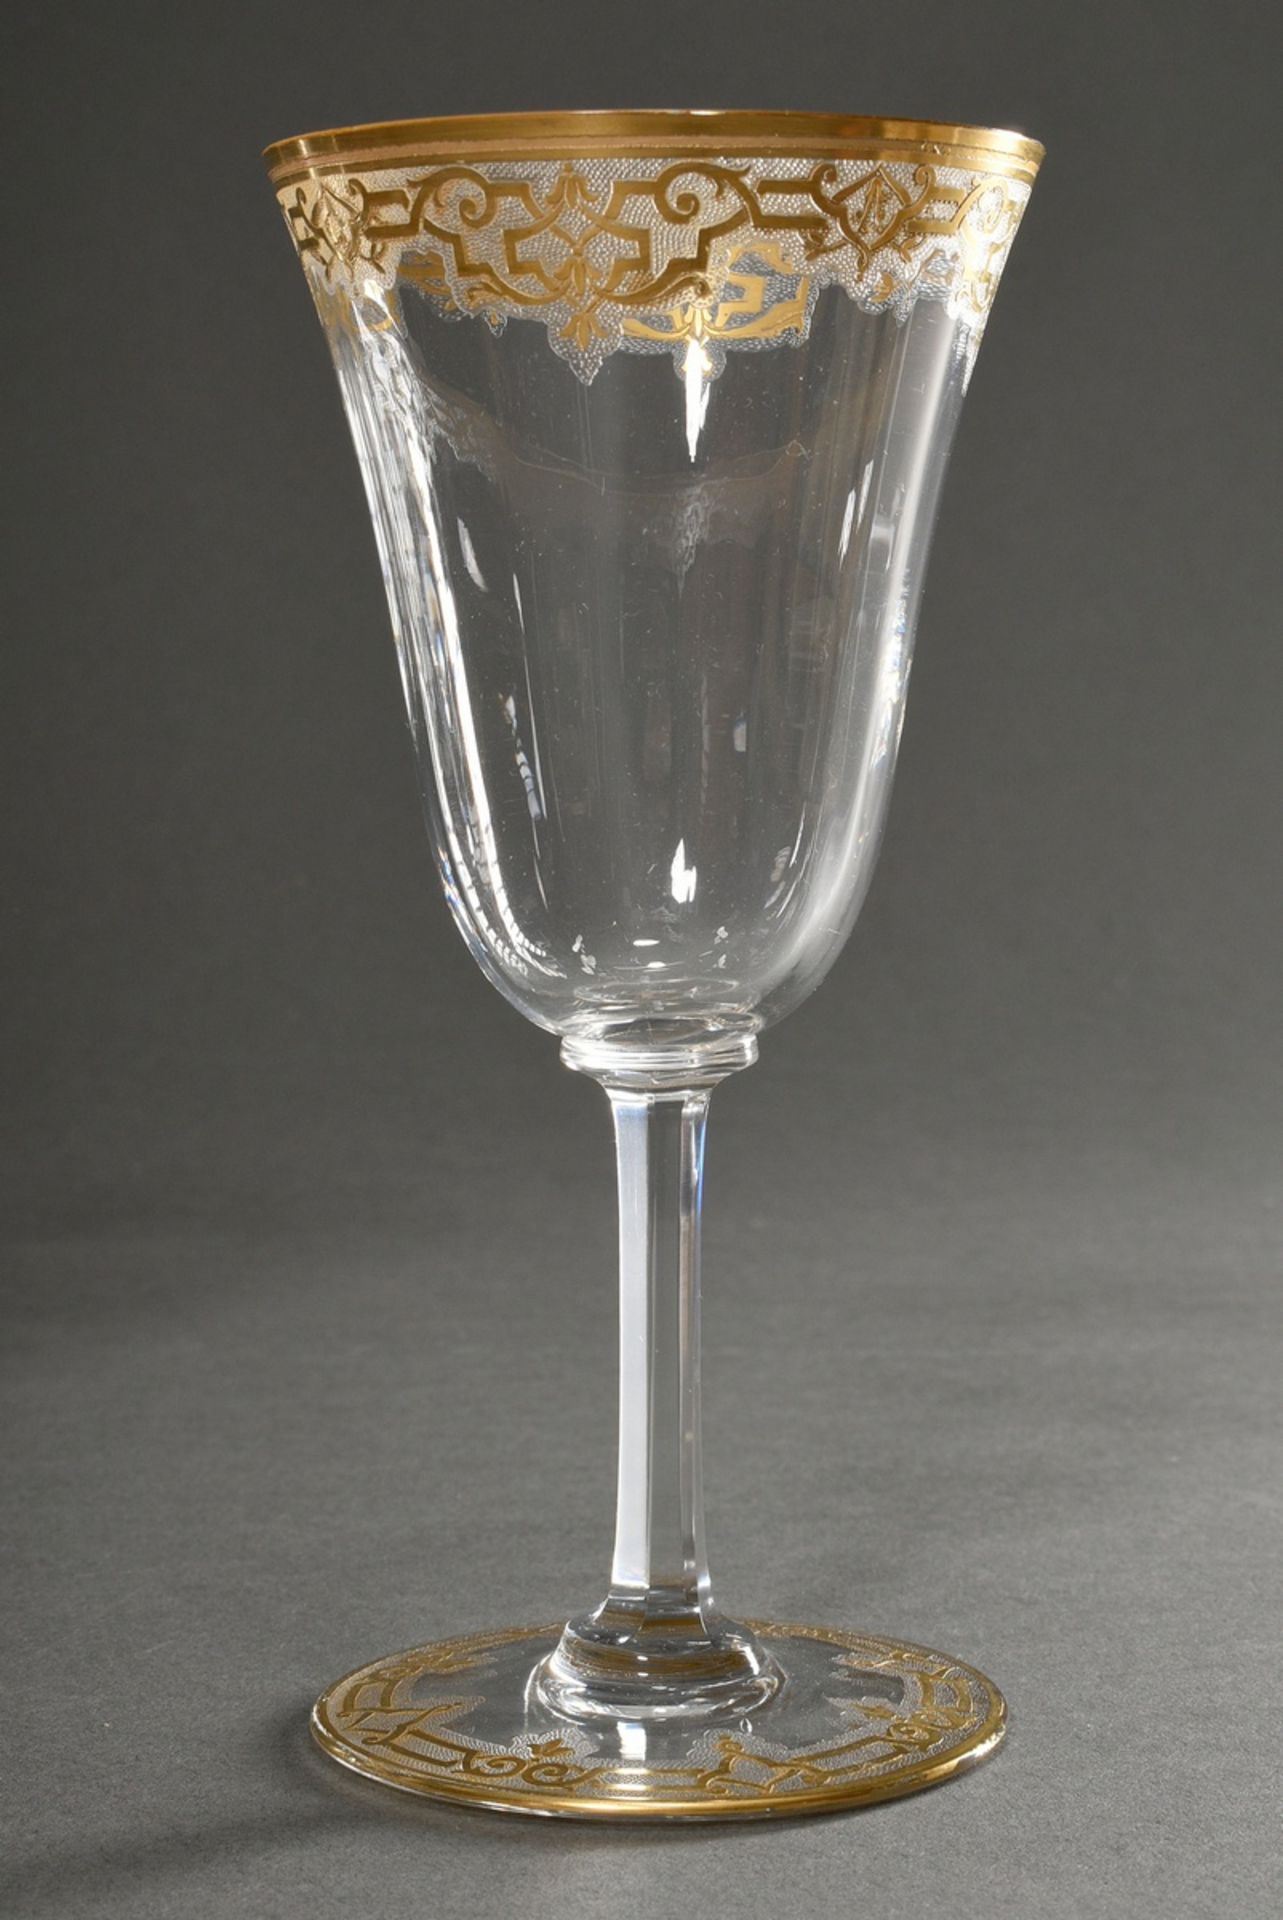 7 Gläser mit ornamentalem Goldrand in Saint Louis Art, H. 17,5cm - Bild 2 aus 5